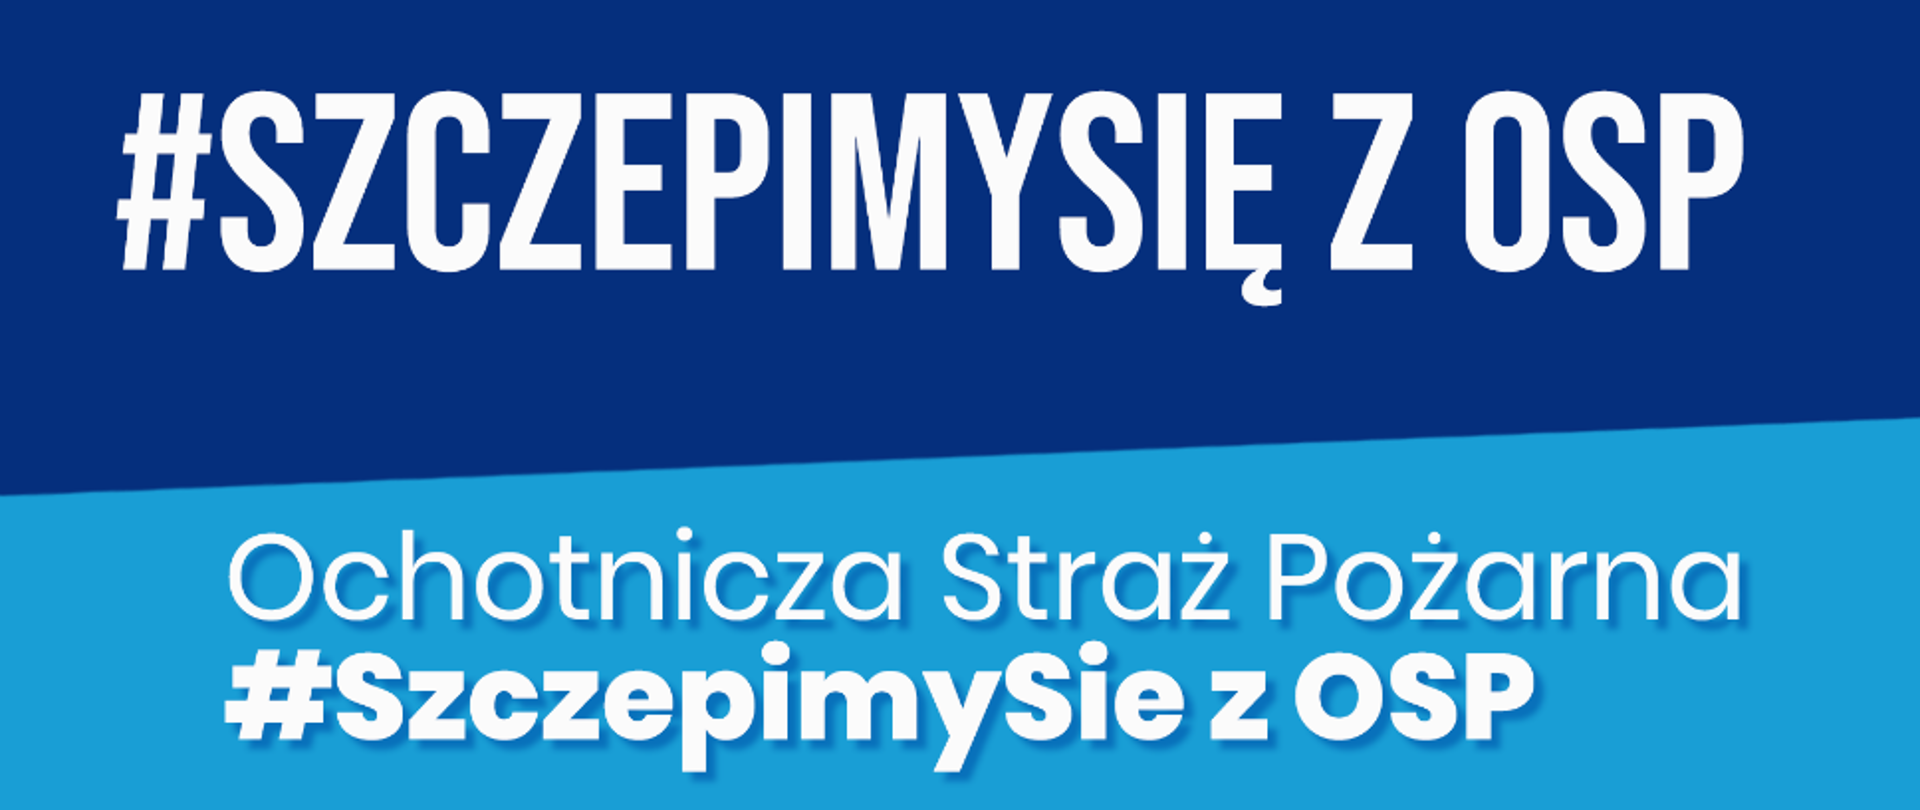 Plakat programu SzczepimySie z OSP z napisem: Ochotnicza Straż Pożarna: 1. transport personelu medycznego 2. transport do punktu szczepień 3. uruchomienie nowego Tymczasowego Punktu Szczepień